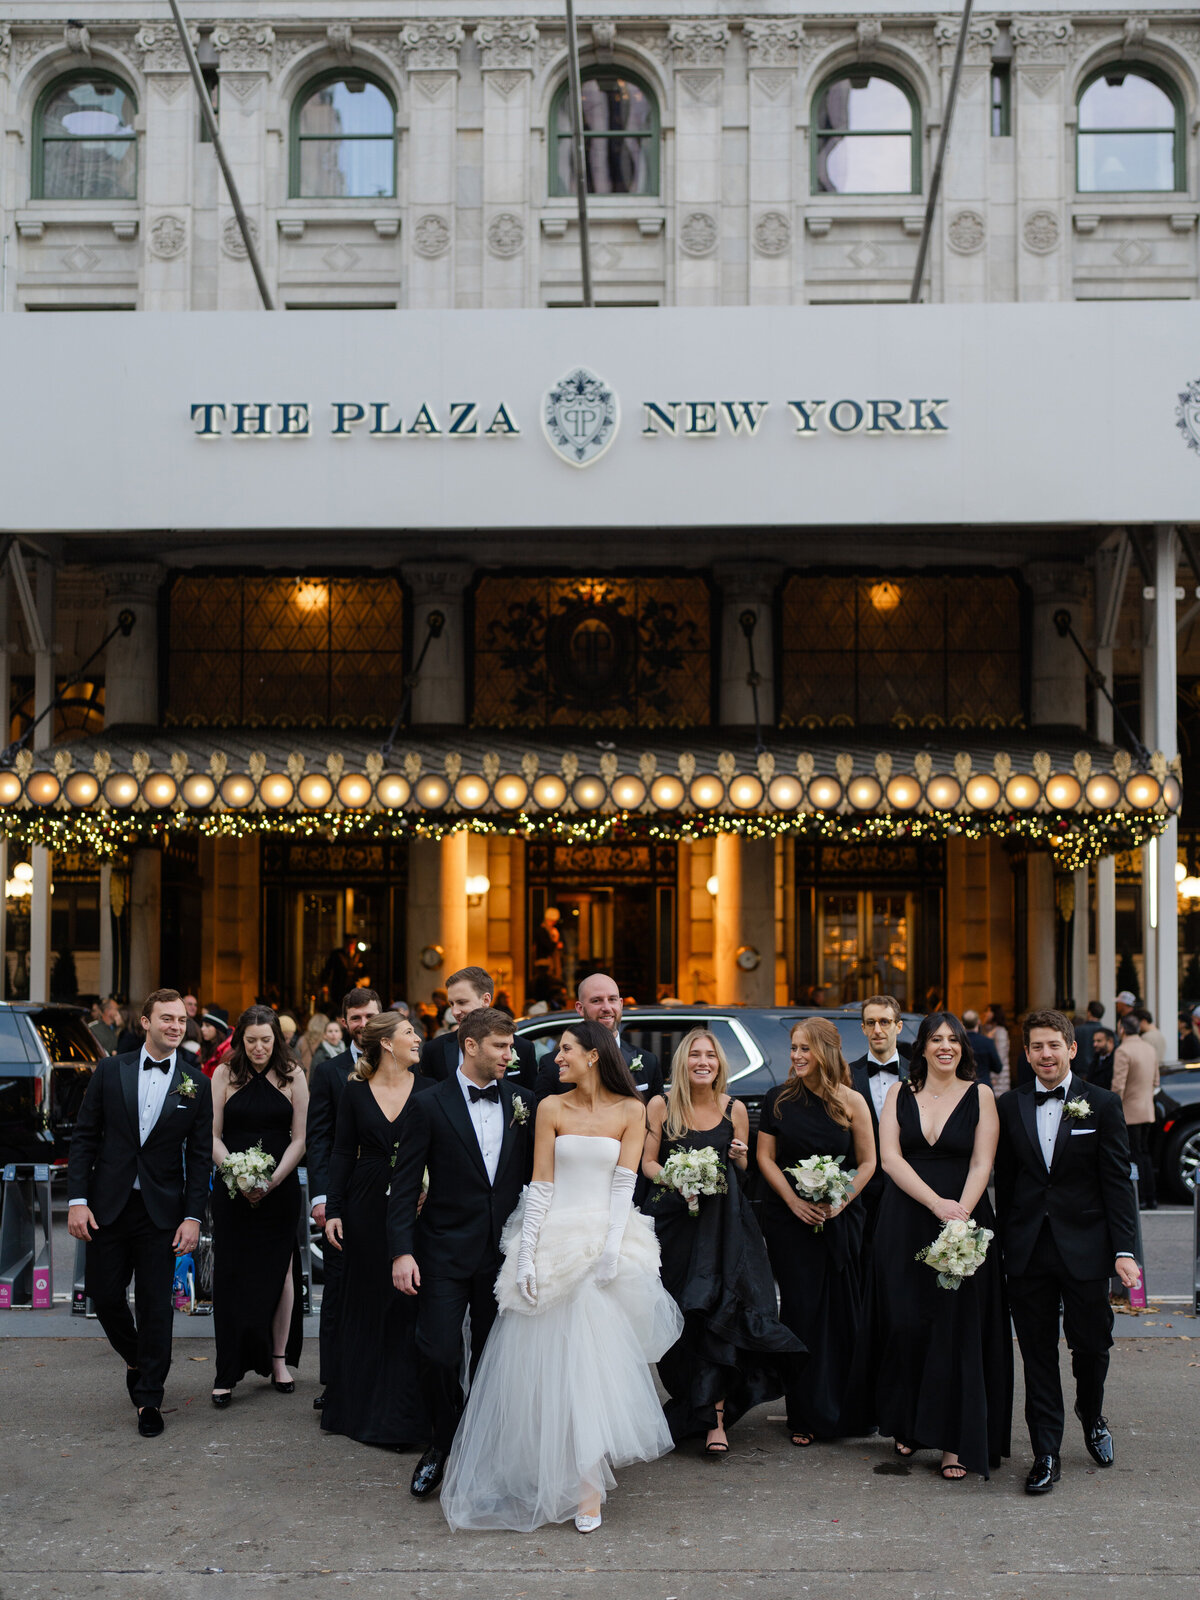 theplazahotel-plazawedding-fancywedding-newyorkwedding-felixfeyginphotography-021